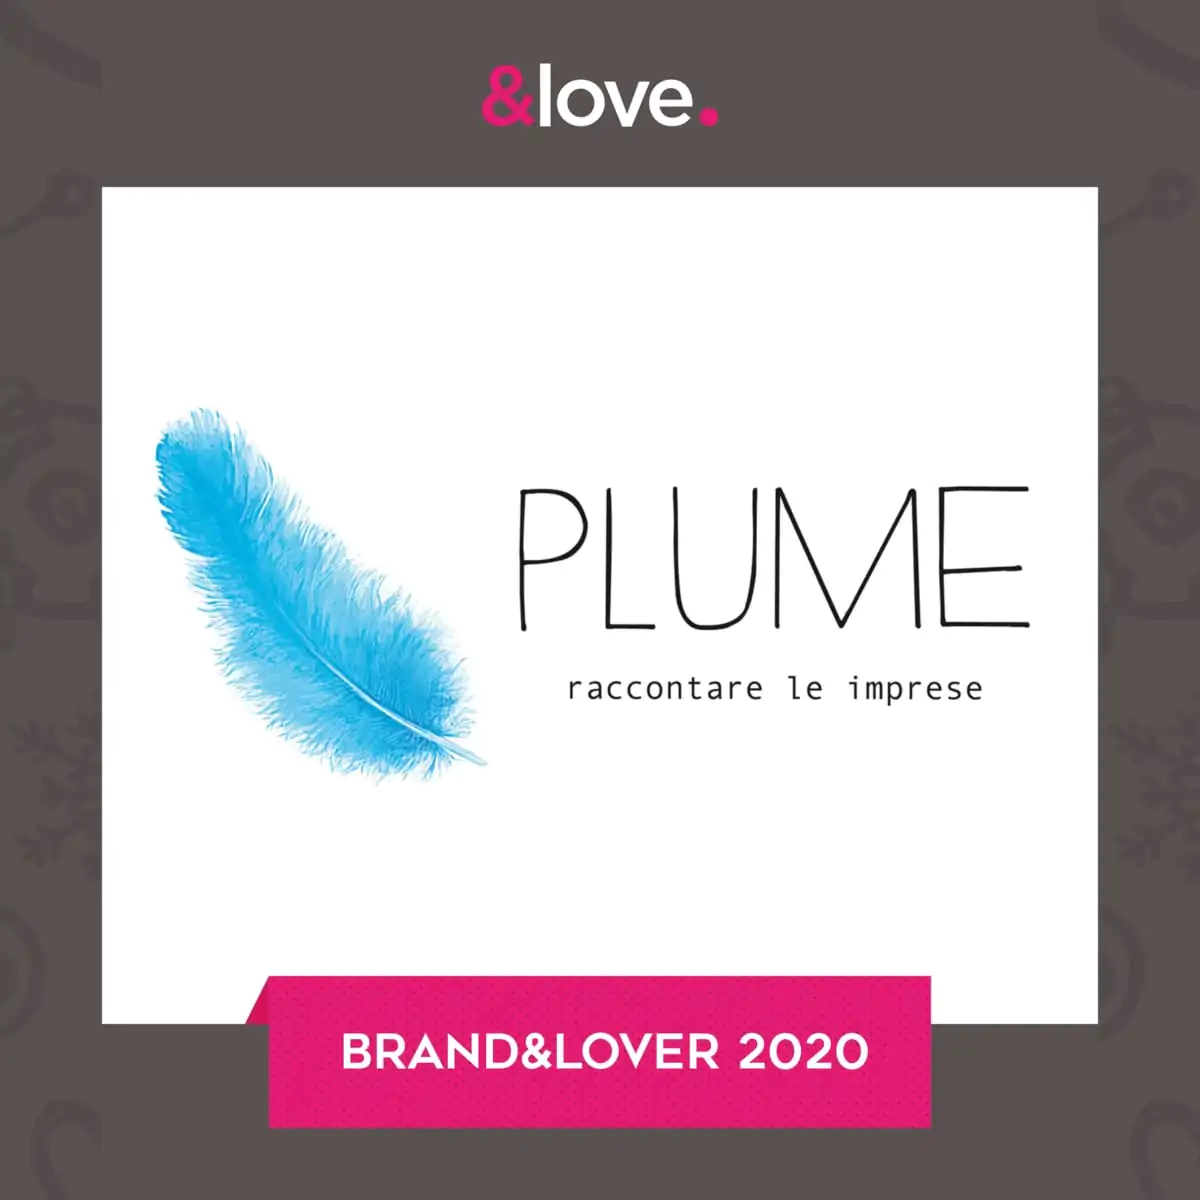 plume partner seolove 2020